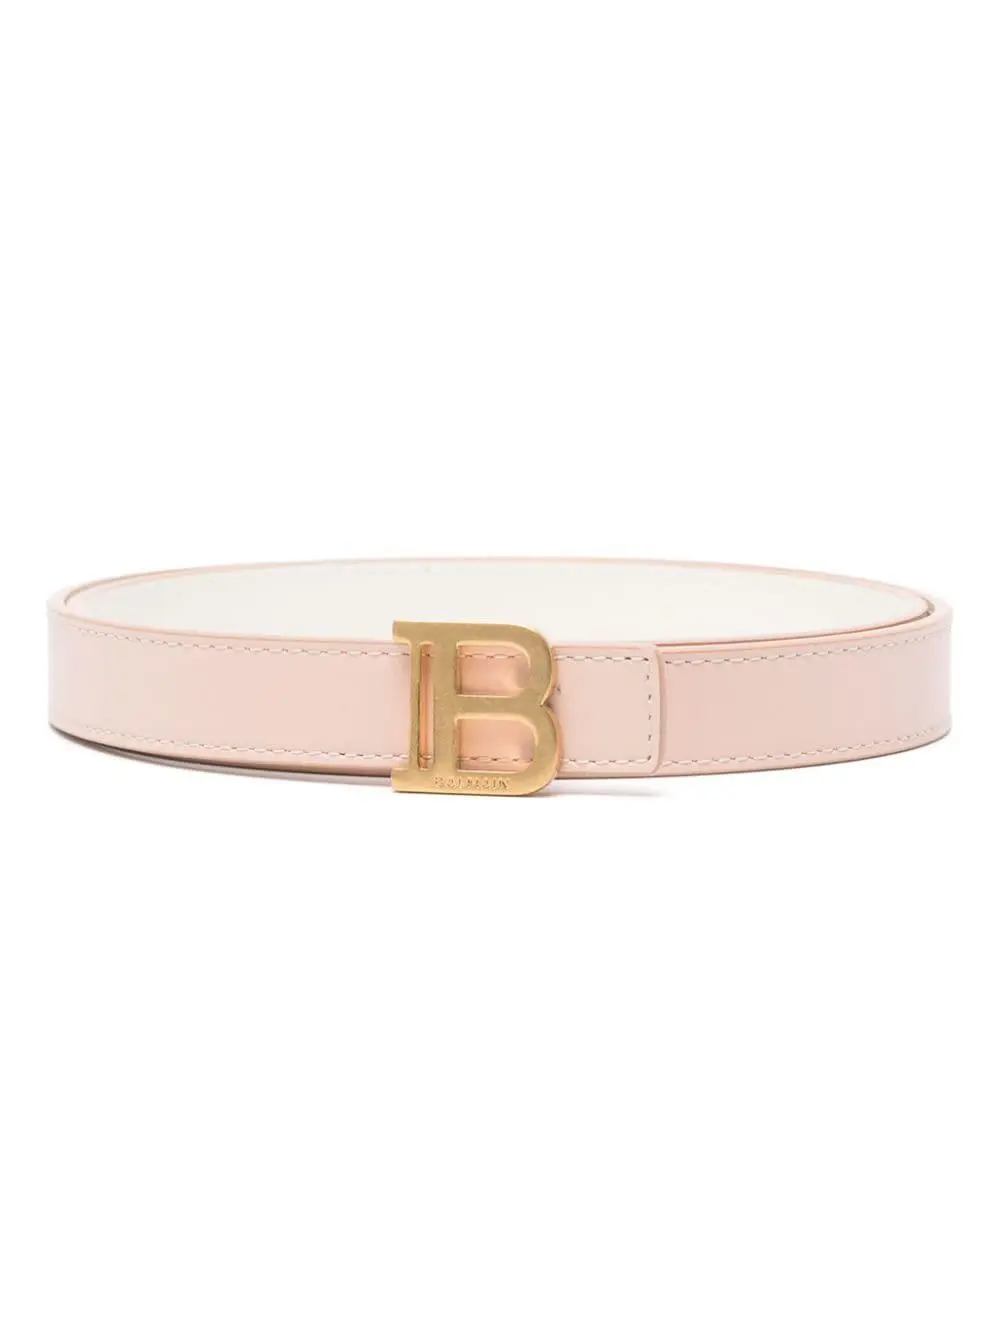 Balmain logo-buckle leather belt - Blue